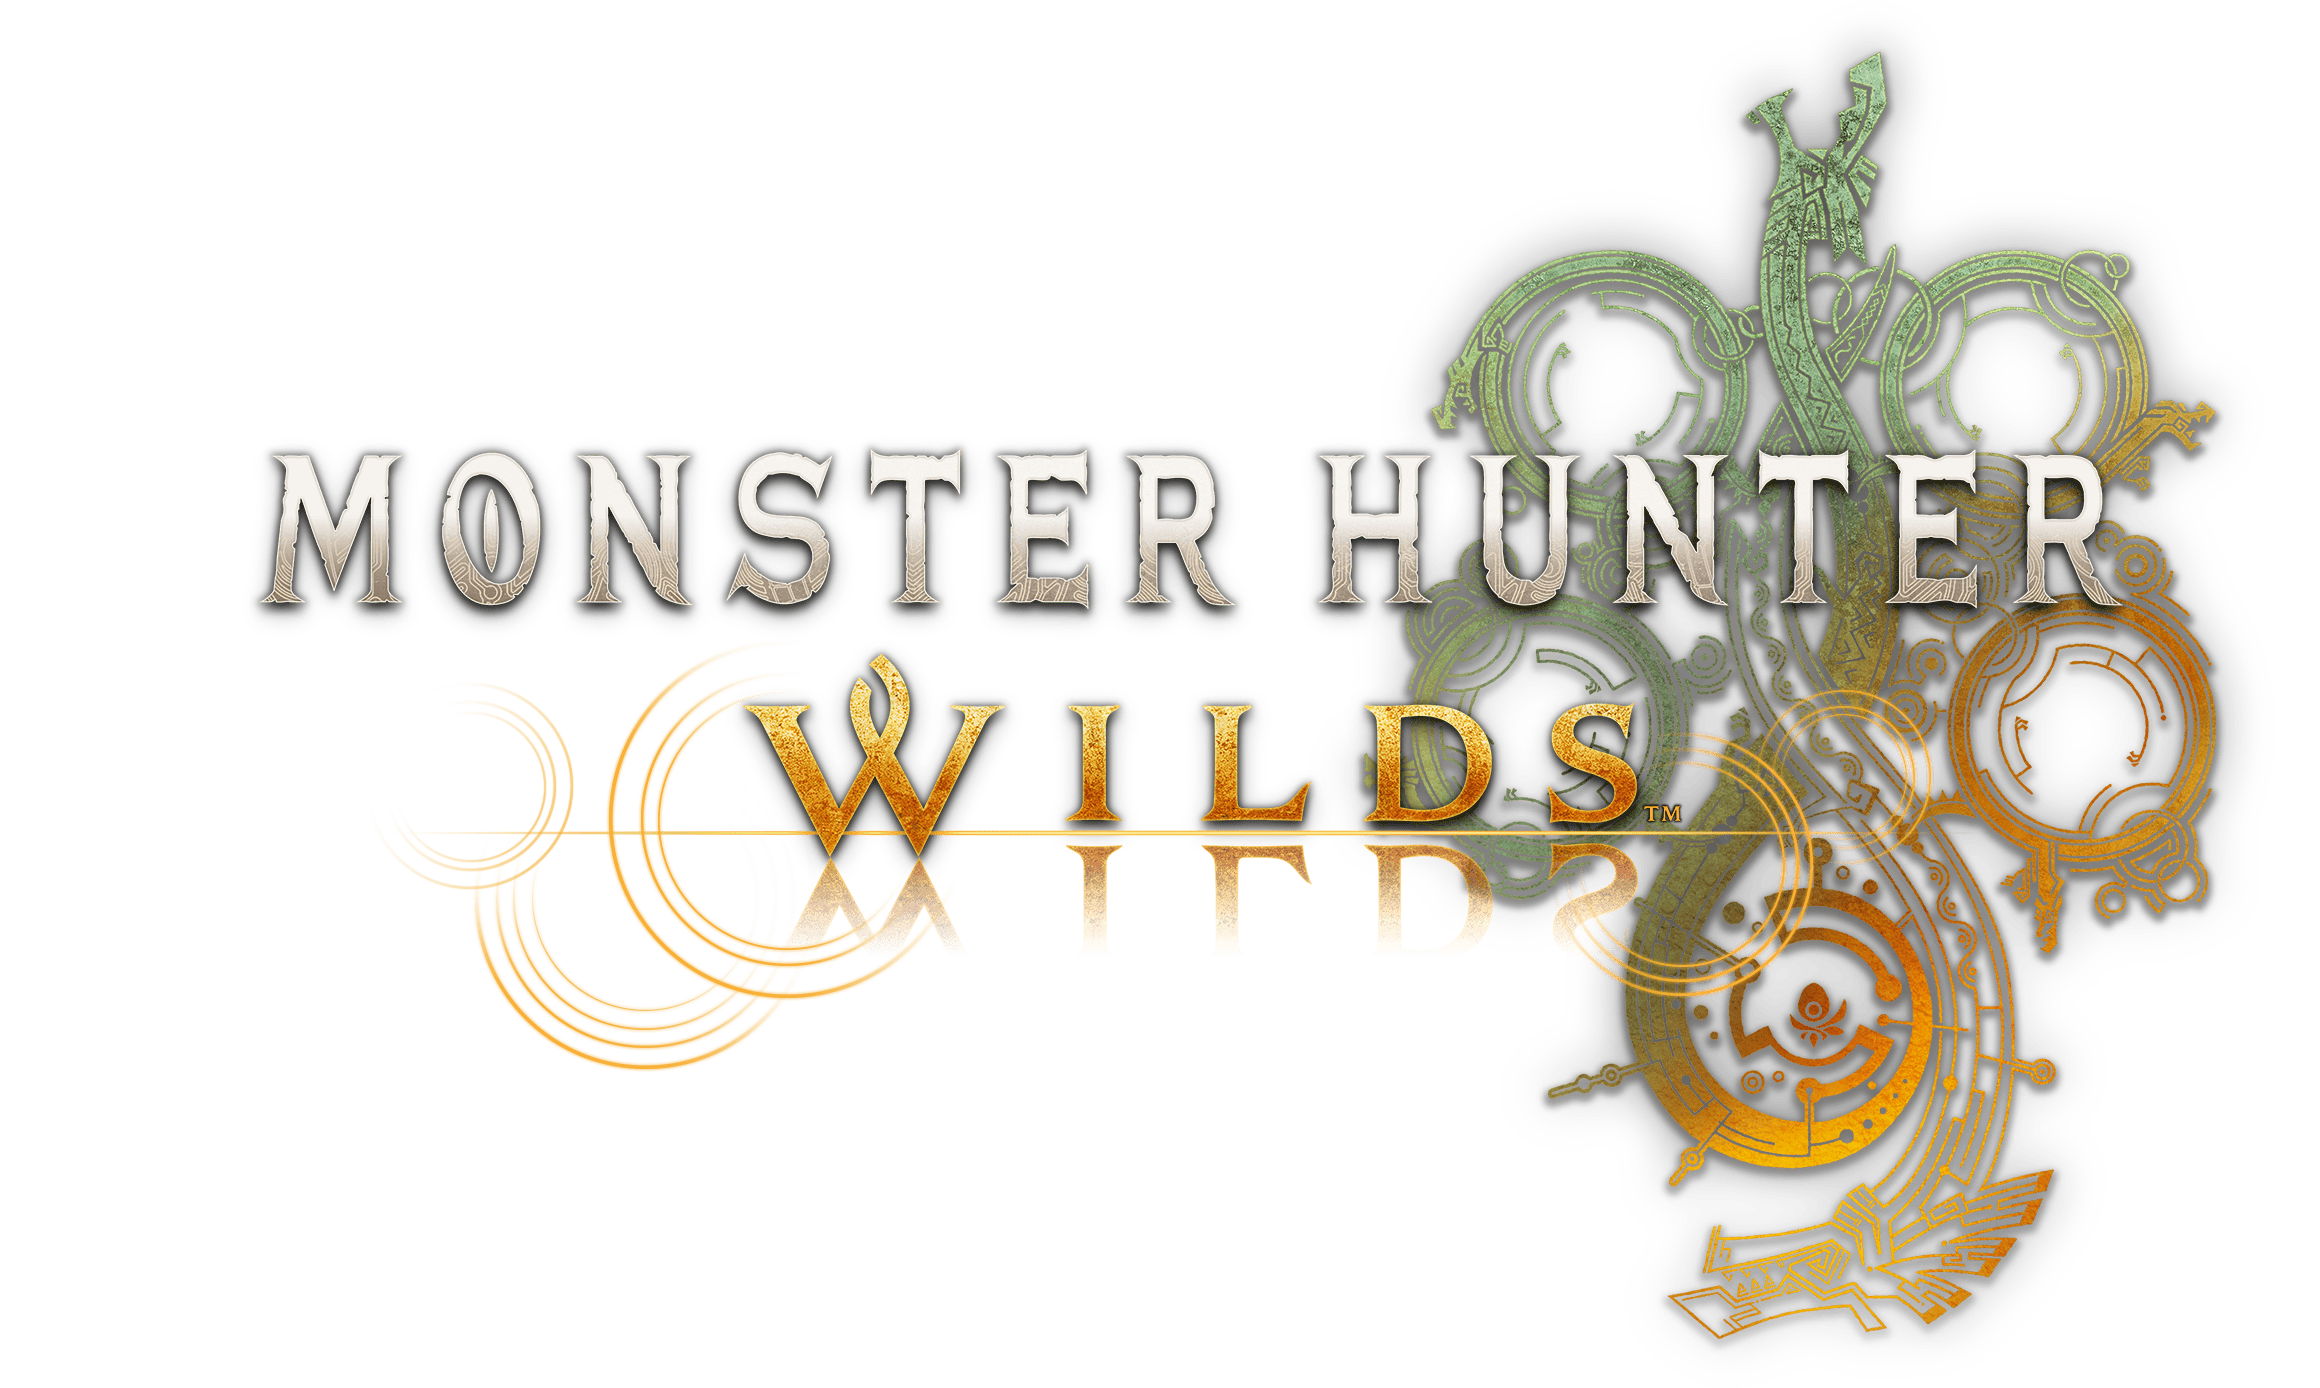 Monster Hunter: Wilds